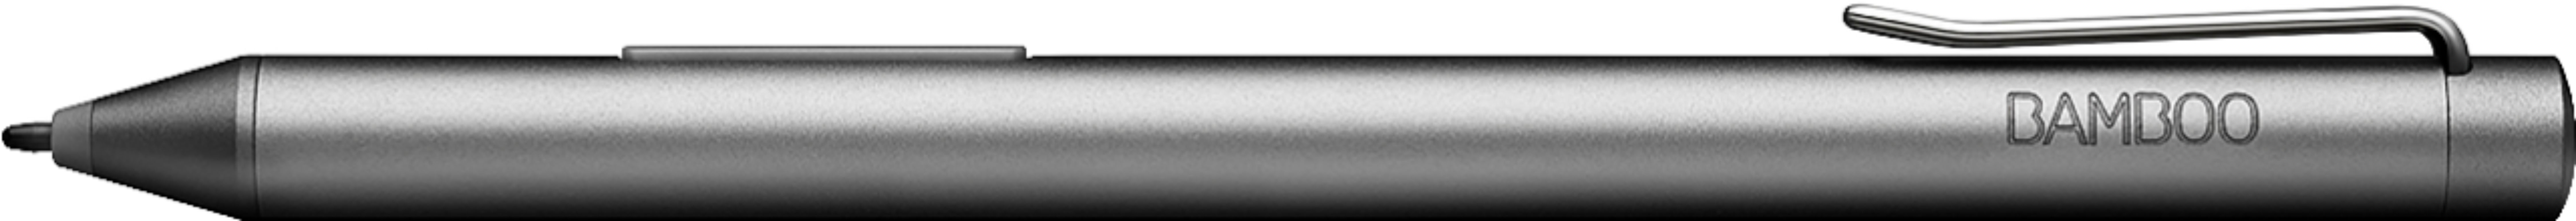 Zell 20 Pcs Black Standard Pen Nibs For Wacom Ctl-471, Ctl-671, Ctl-472,  Ctl-672 